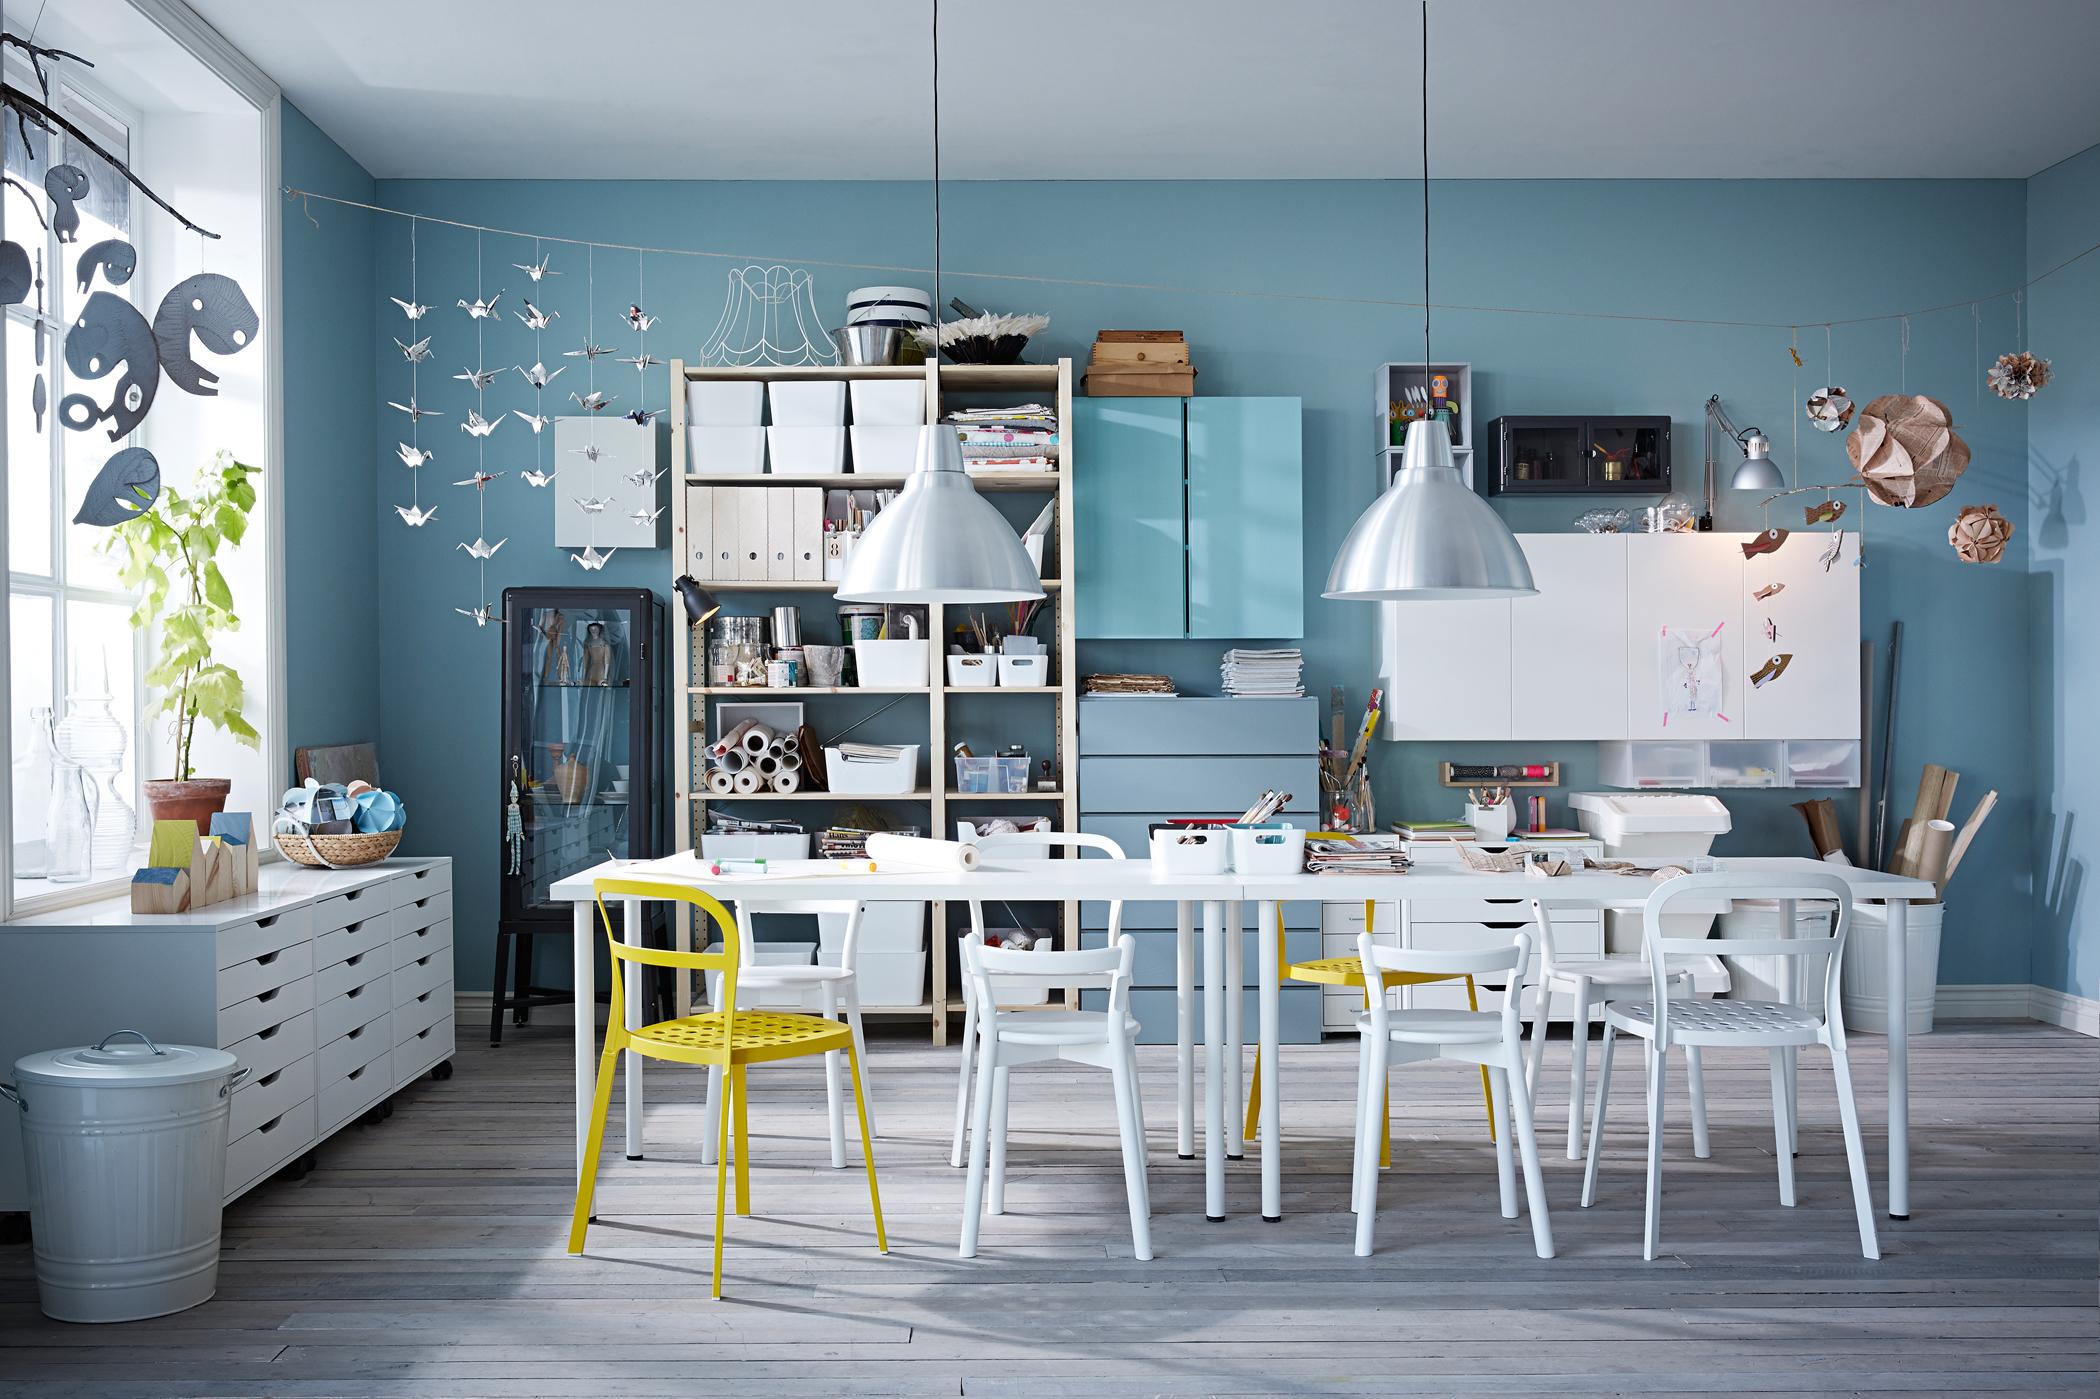 Stauraum im Arbeitszimmer #arbeitszimmer #ikea #weißerstuhl #hobbyraum #blauewandgestaltung #schwarzevitrine ©Inter IKEA Systems B.V.